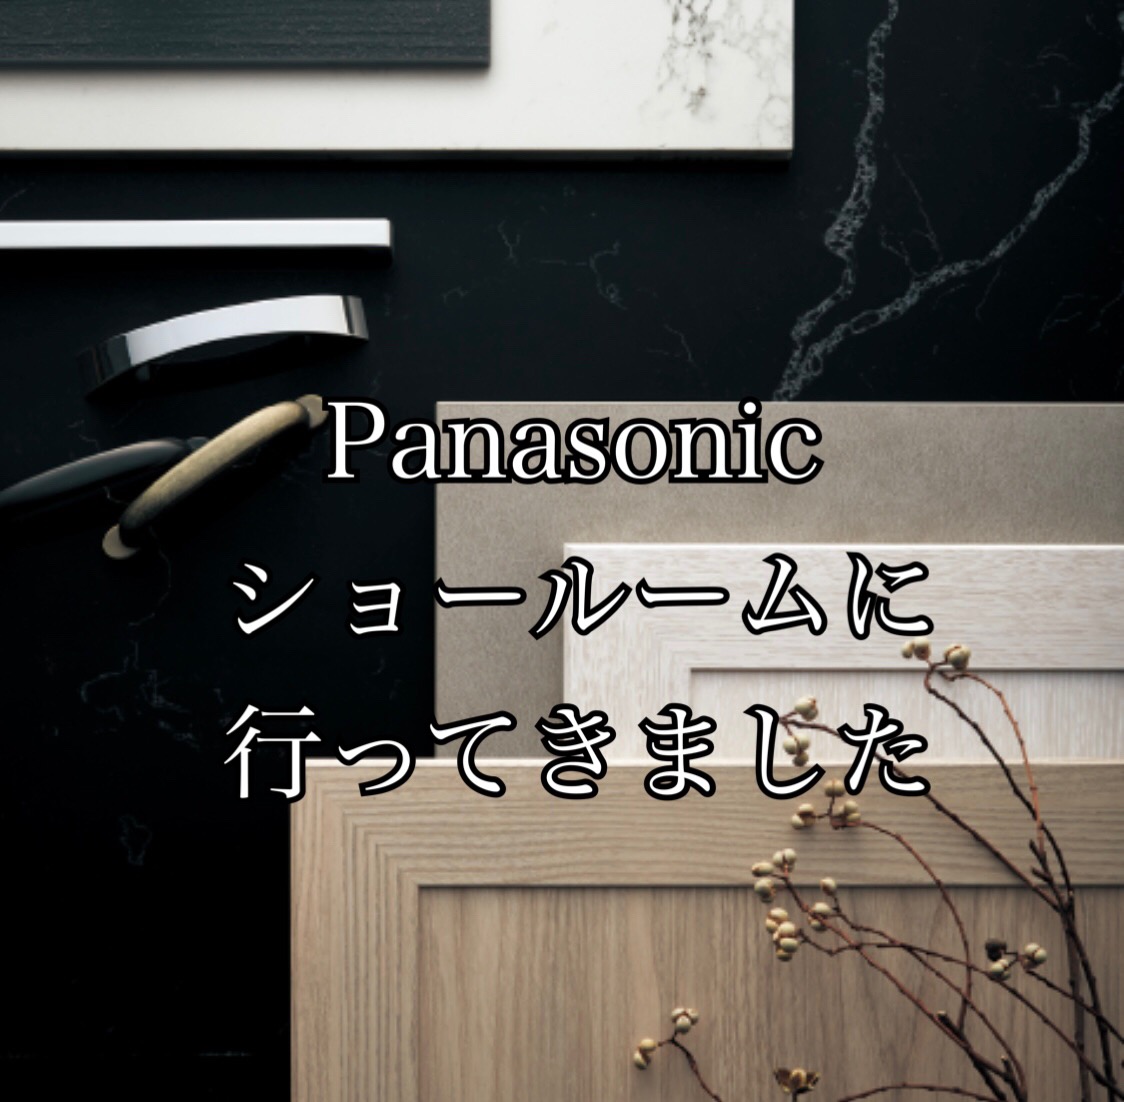 Panasonic名古屋ショールームに行ってきました アイキャッチ画像